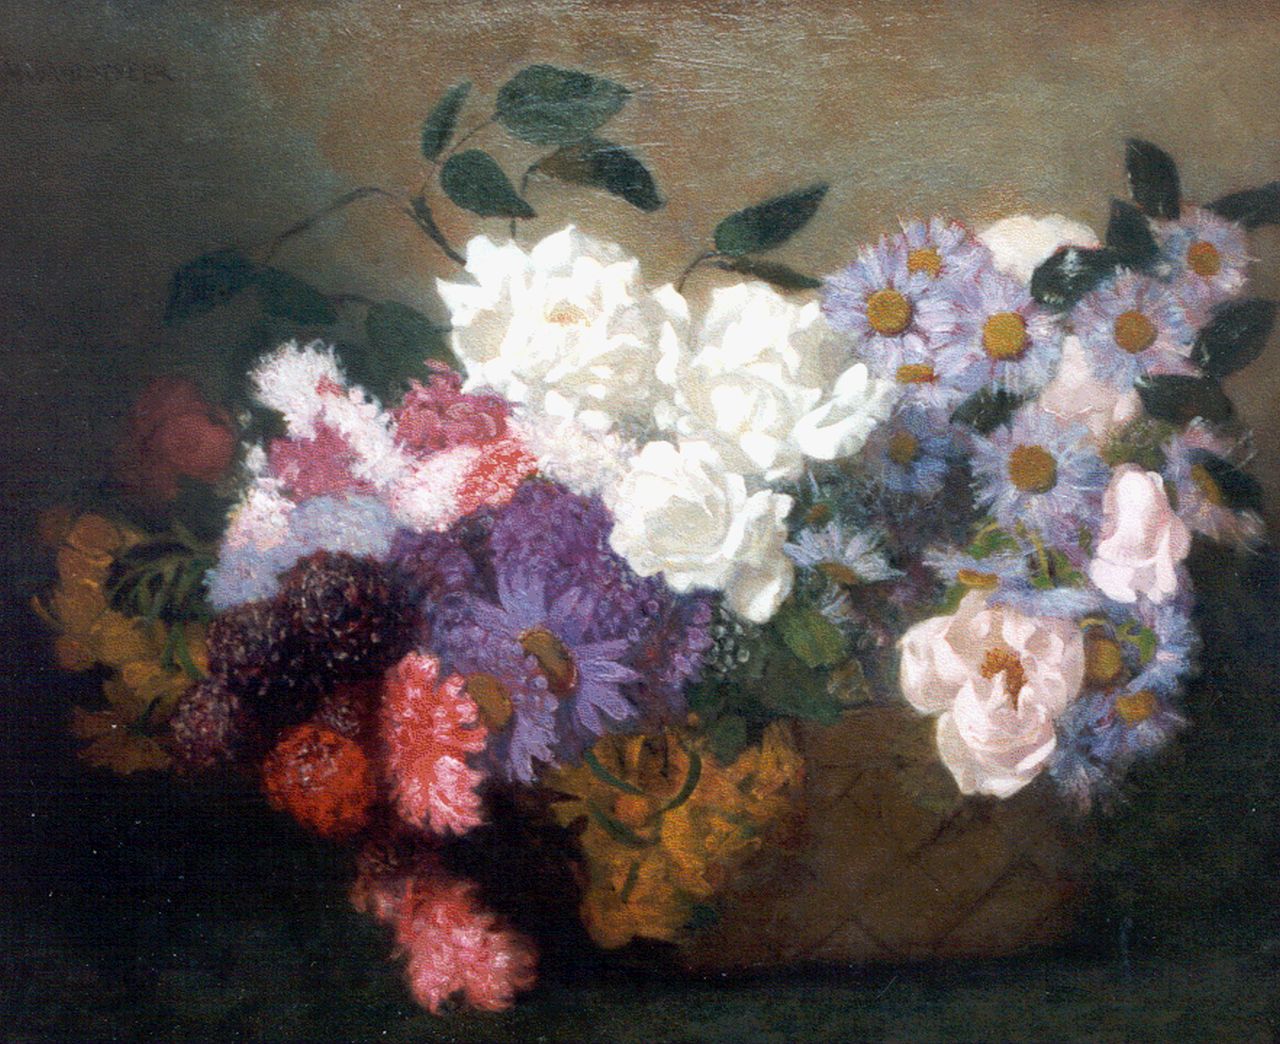 Wandscheer M.W.  | Maria Wilhelmina 'Marie' Wandscheer, Mand met bloemen, olieverf op doek 55,0 x 65,7 cm, gesigneerd linksboven